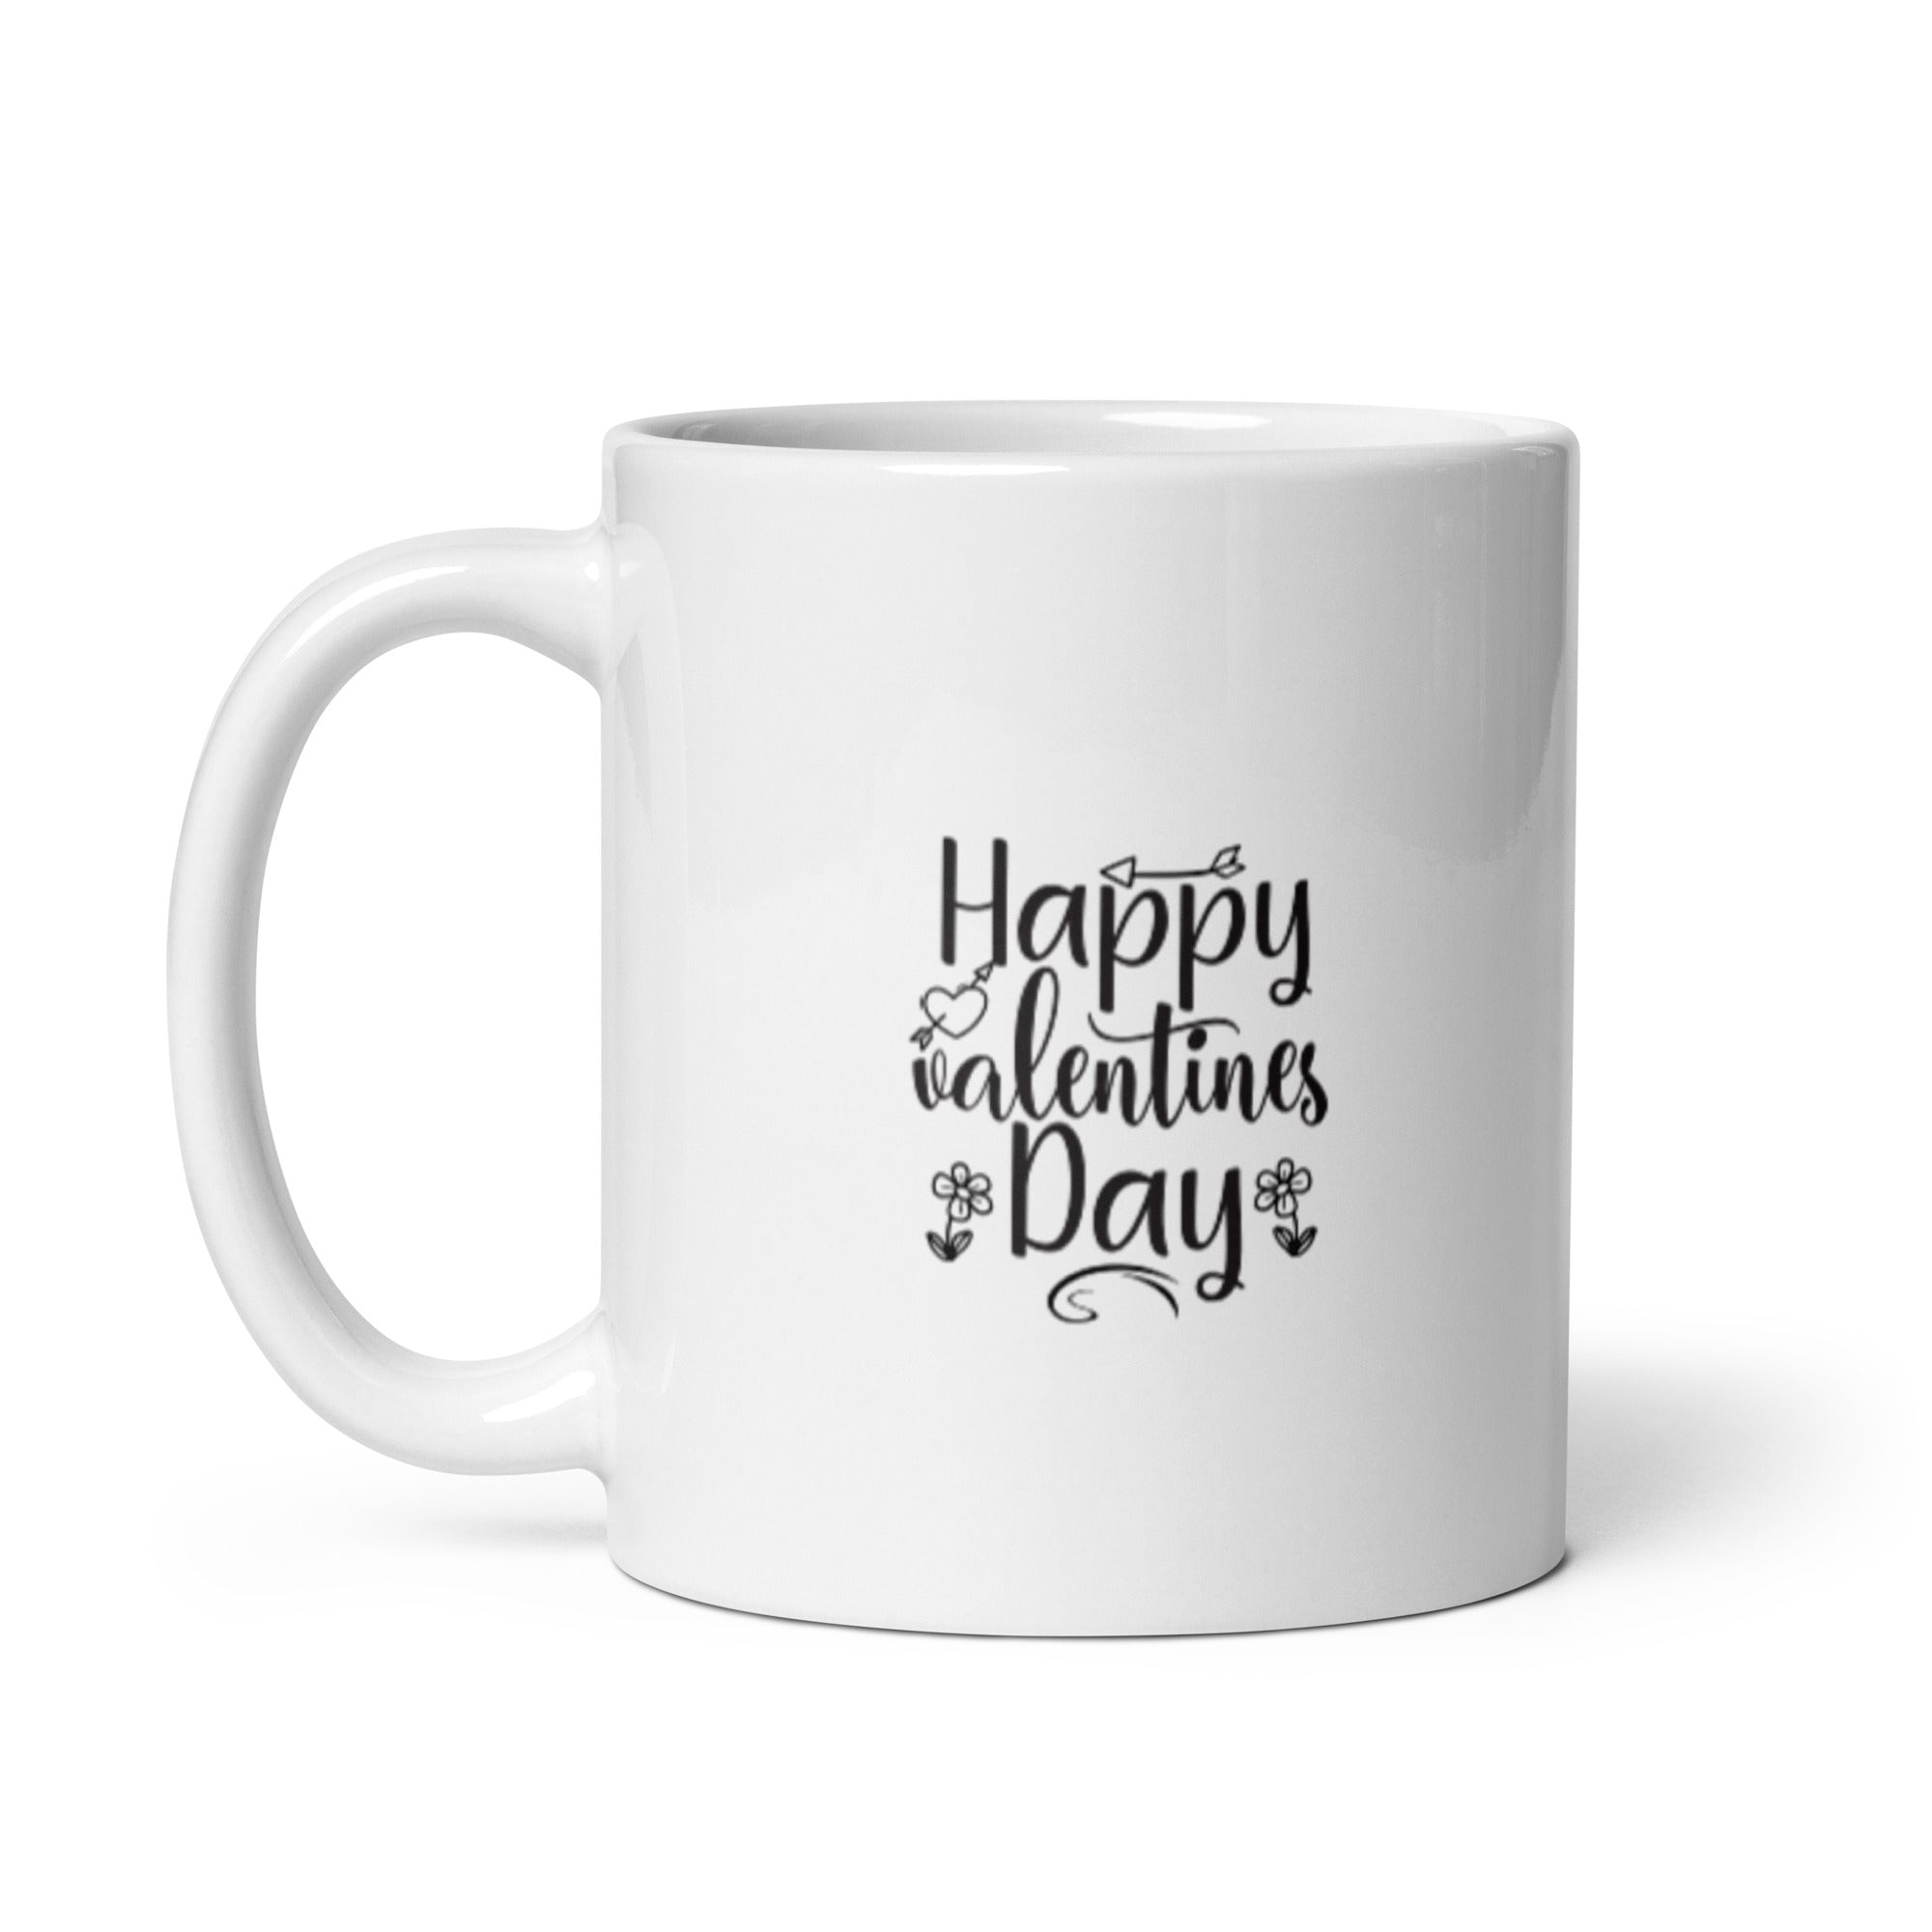 Happy Valentine's Day - White glossy mug